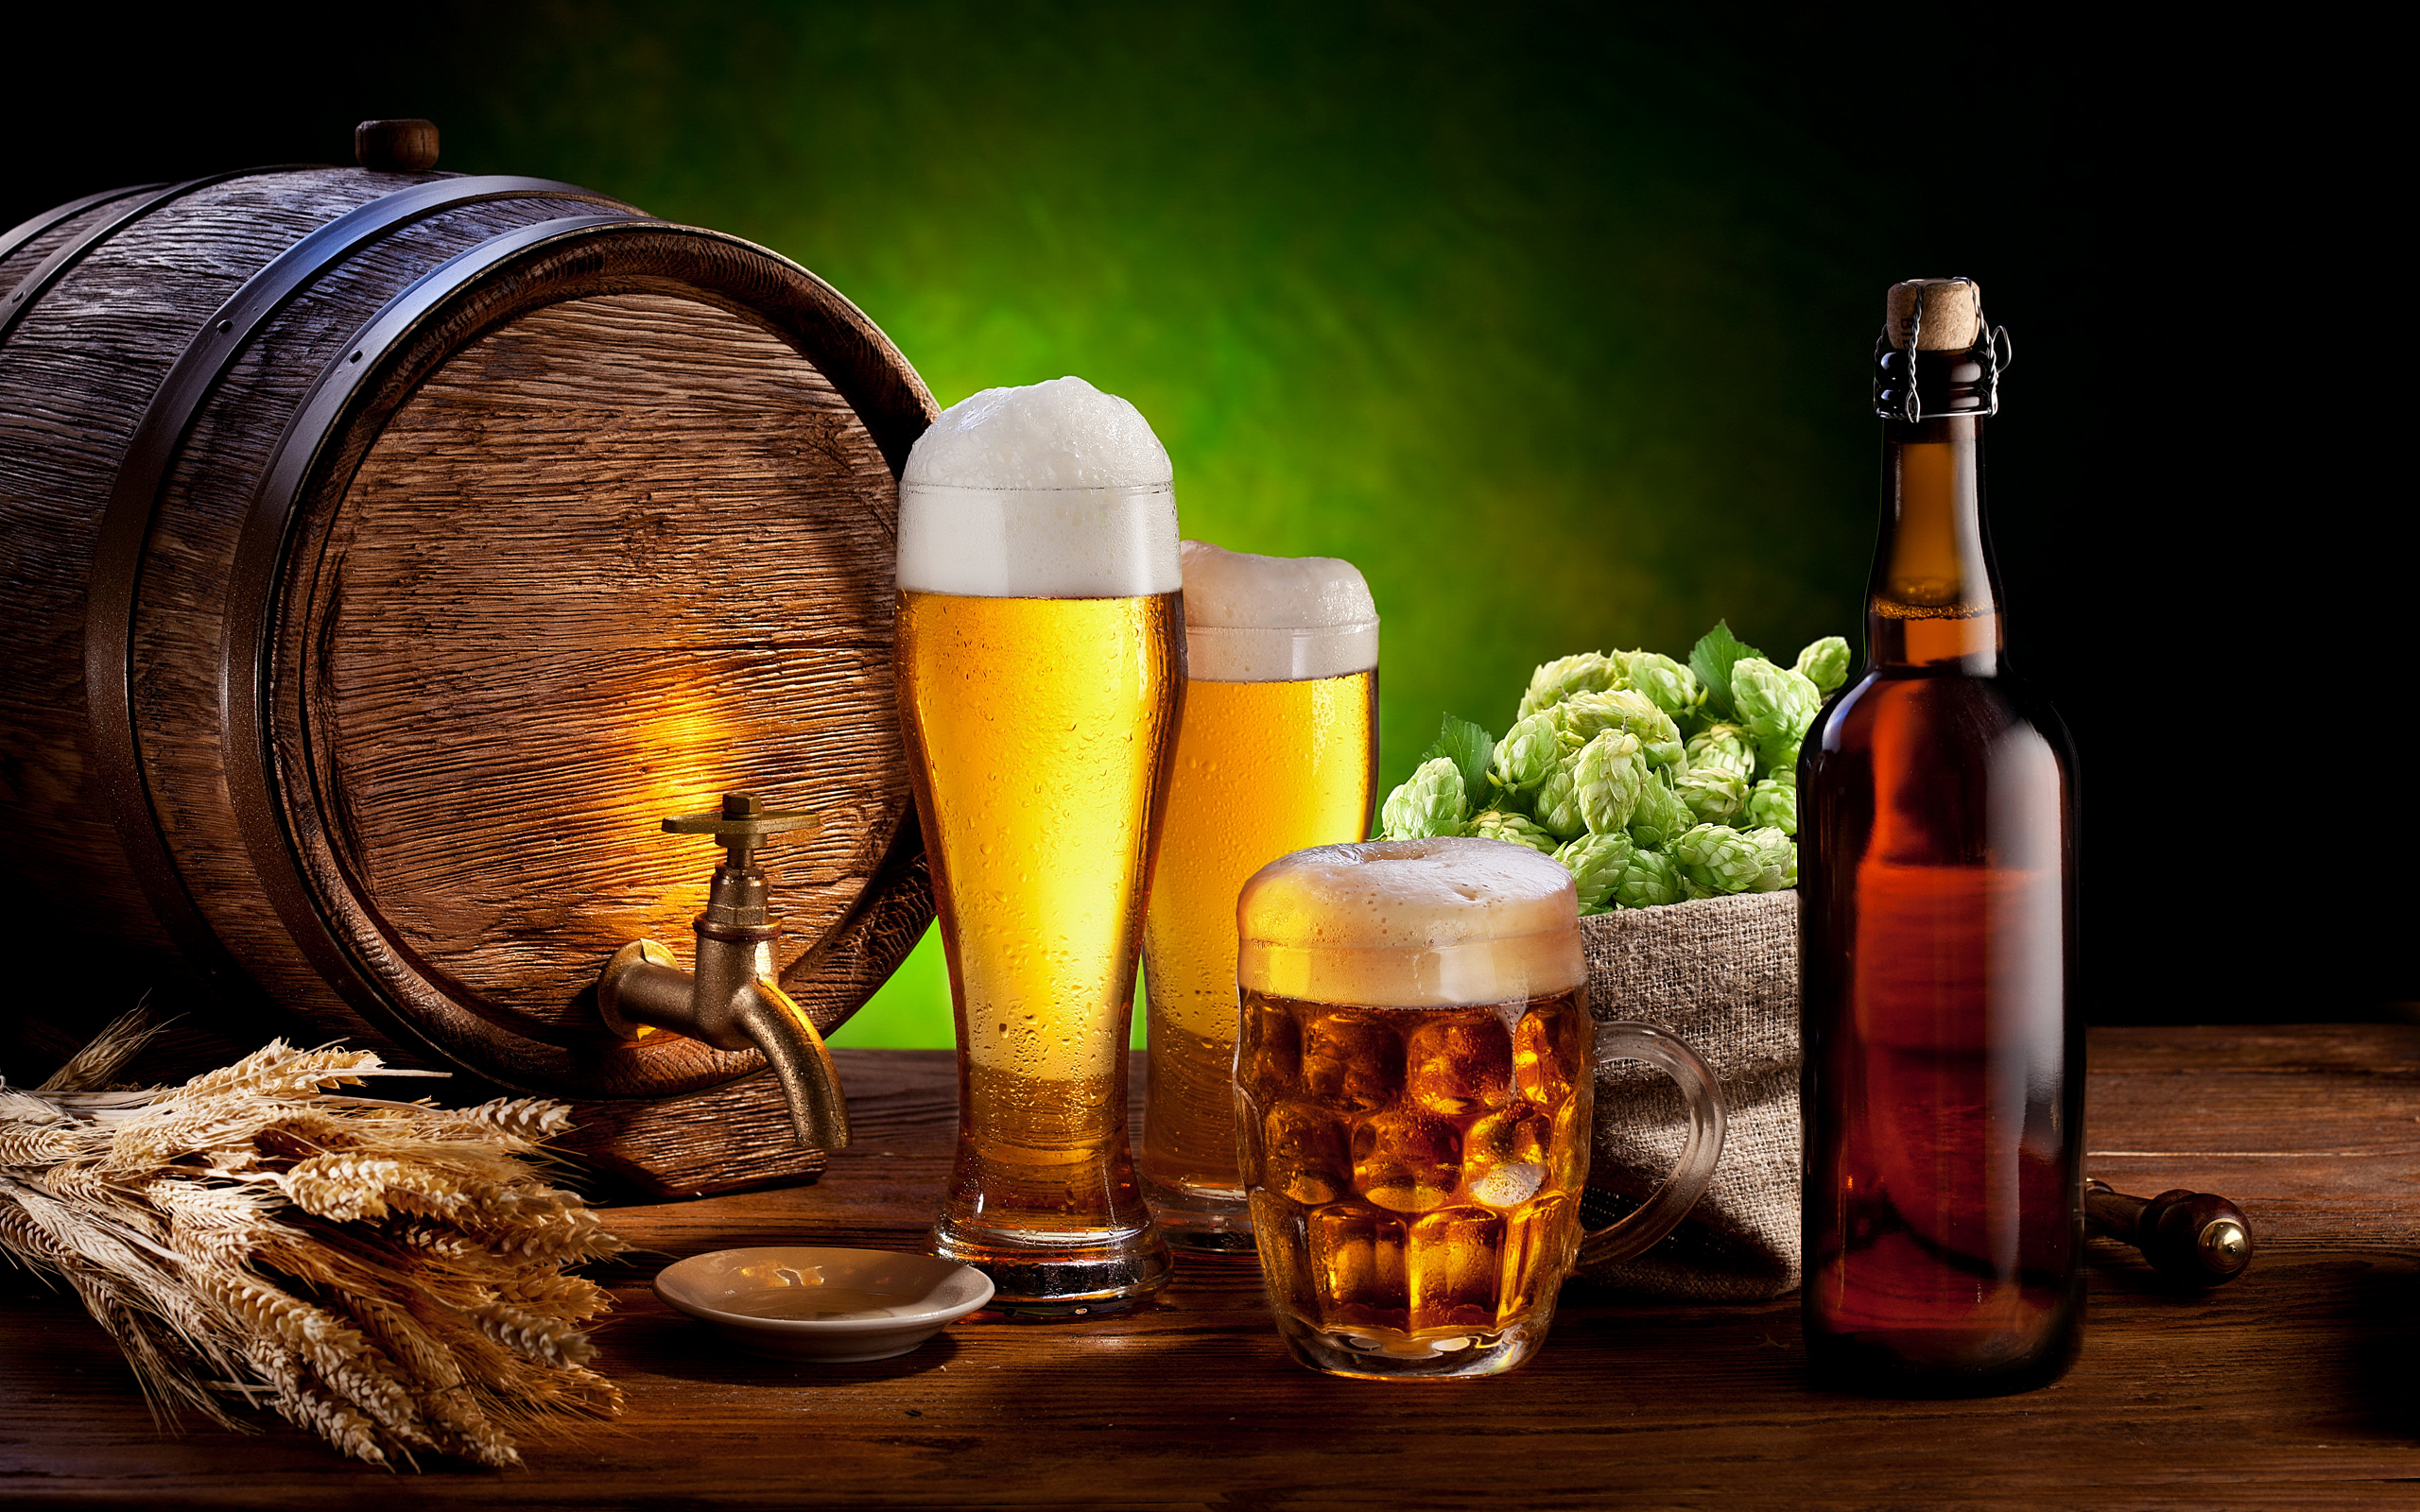 Free download wallpaper Food, Beer, Glass, Bottle, Barrel on your PC desktop